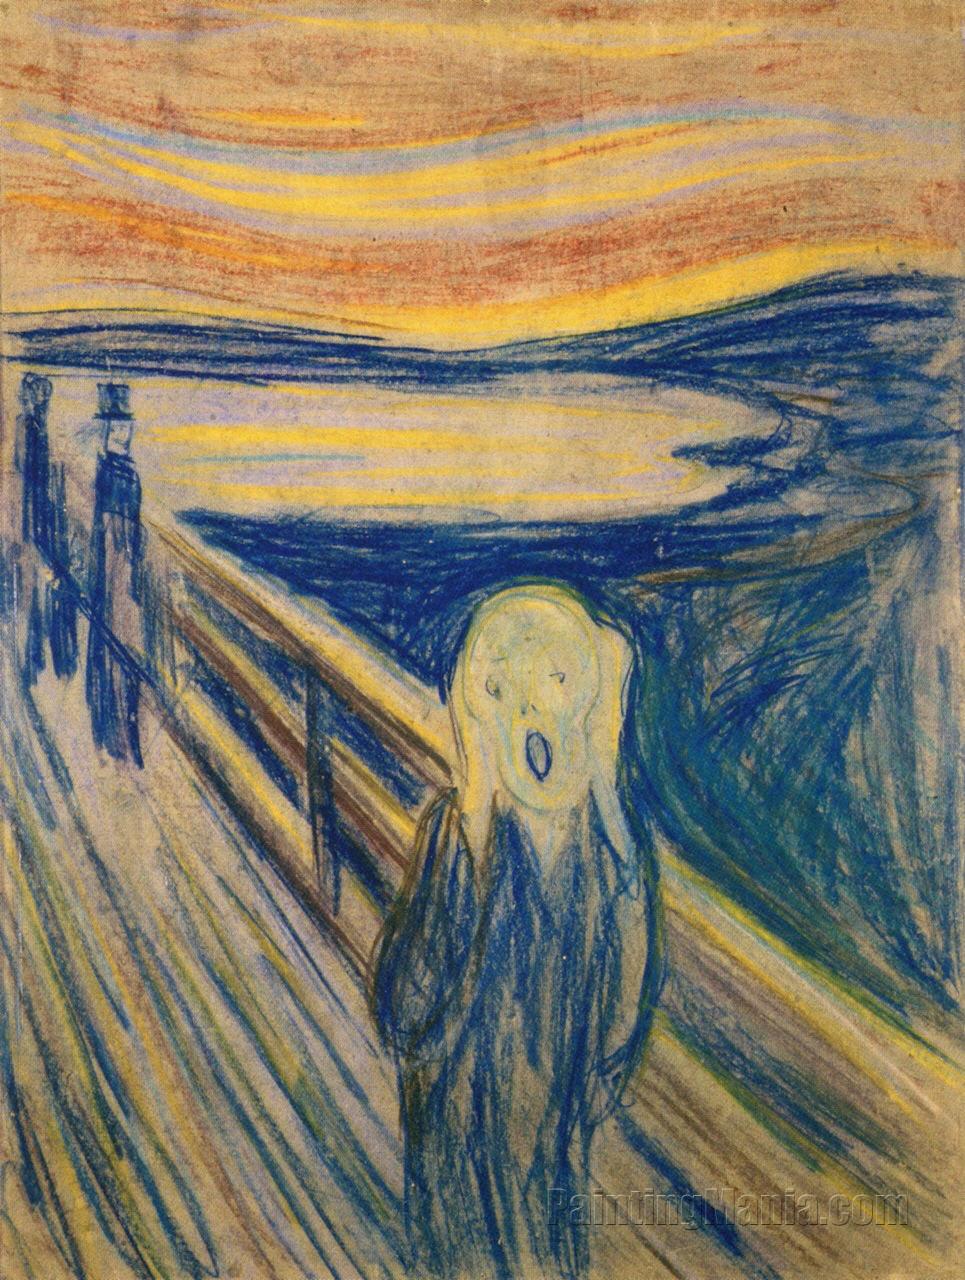 The Scream (1893)